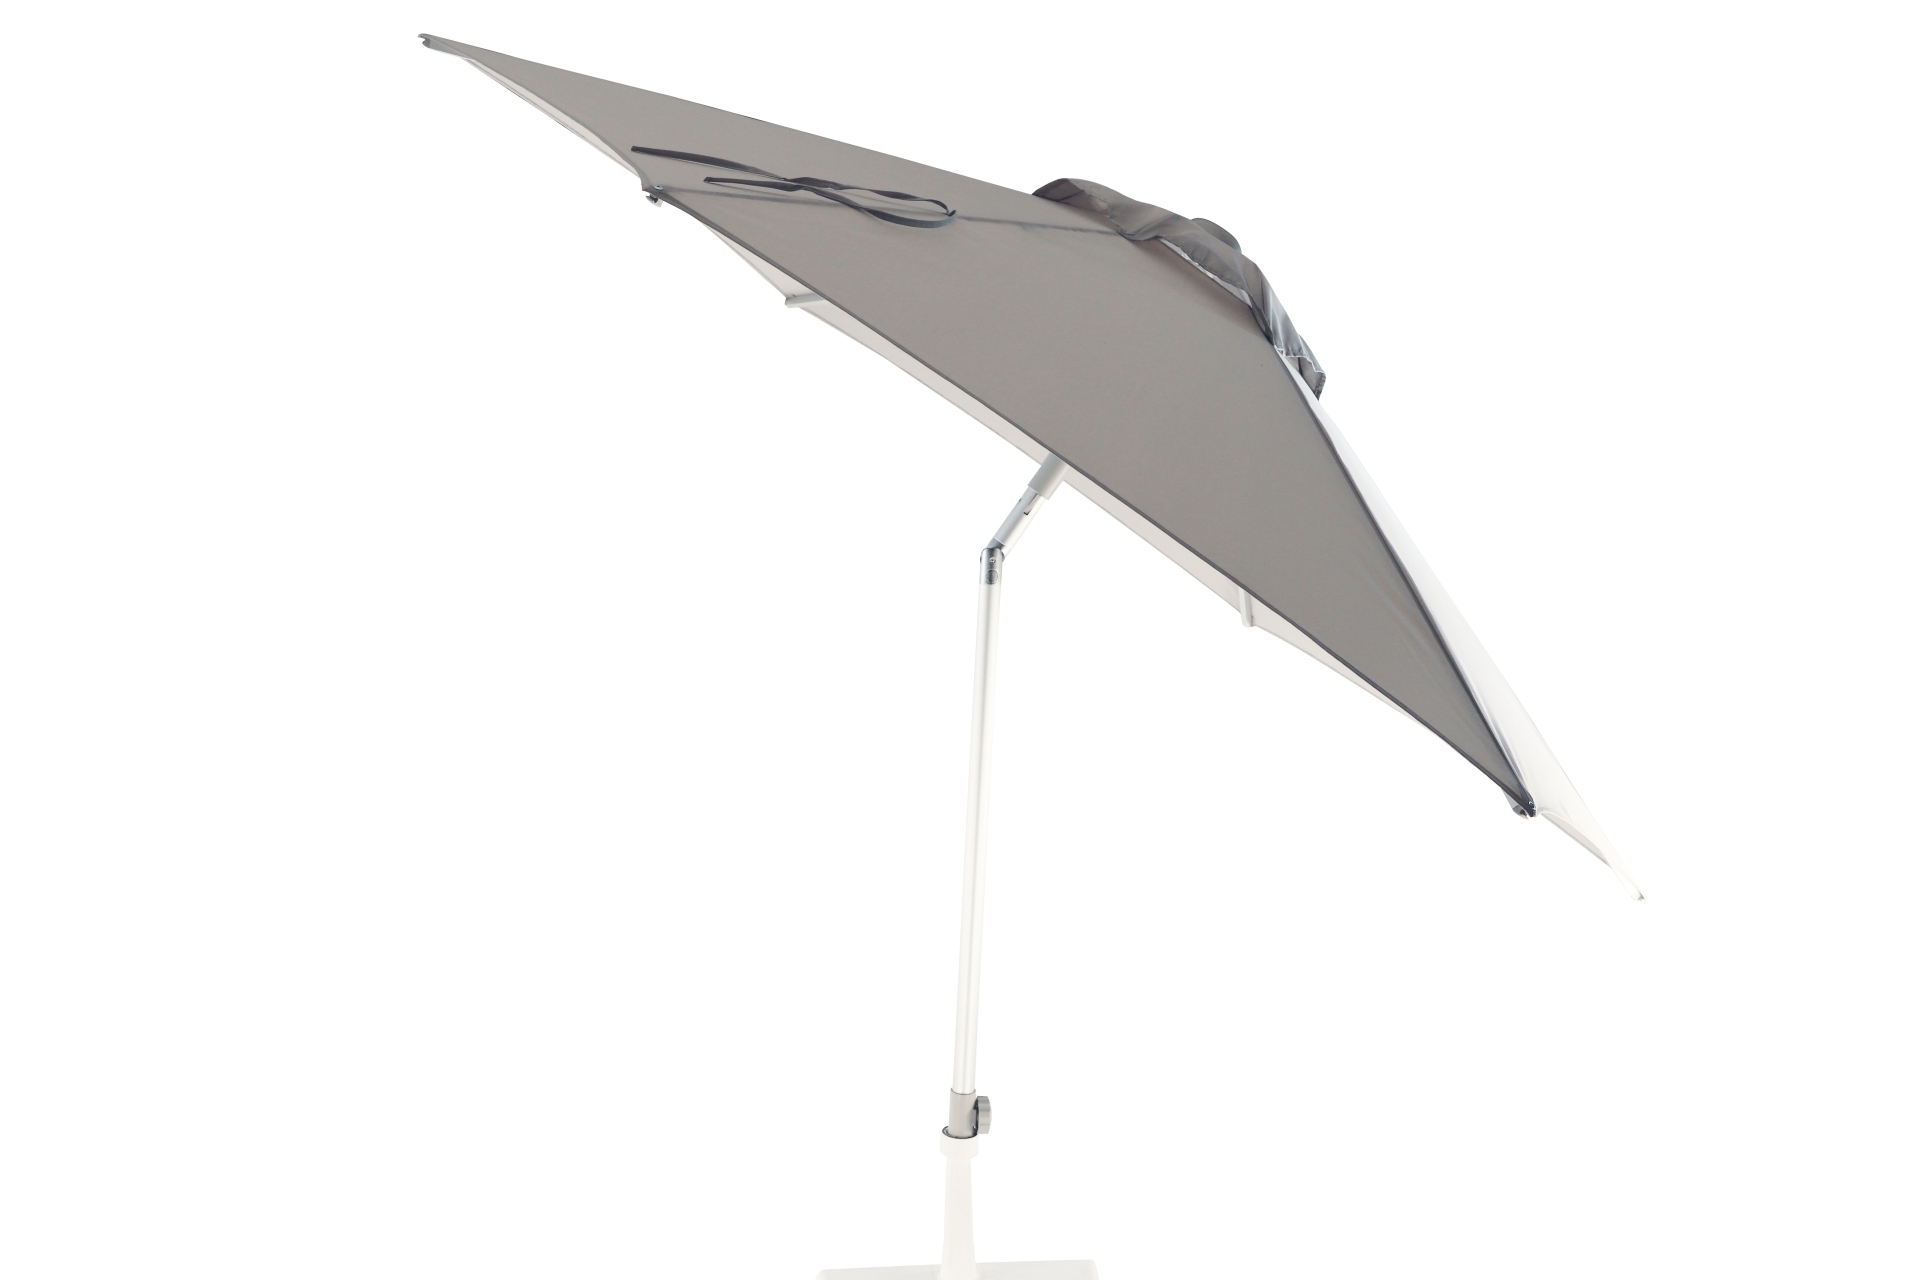 Der Sonnenschirm Elba überzeugt mit seinem modernen Design. Die Form des Schirms ist Rund und hat eine Größe von 300 cm. Designet wurde er von der Marke Jan Kurtz und hat die Farbe Hellgrau.